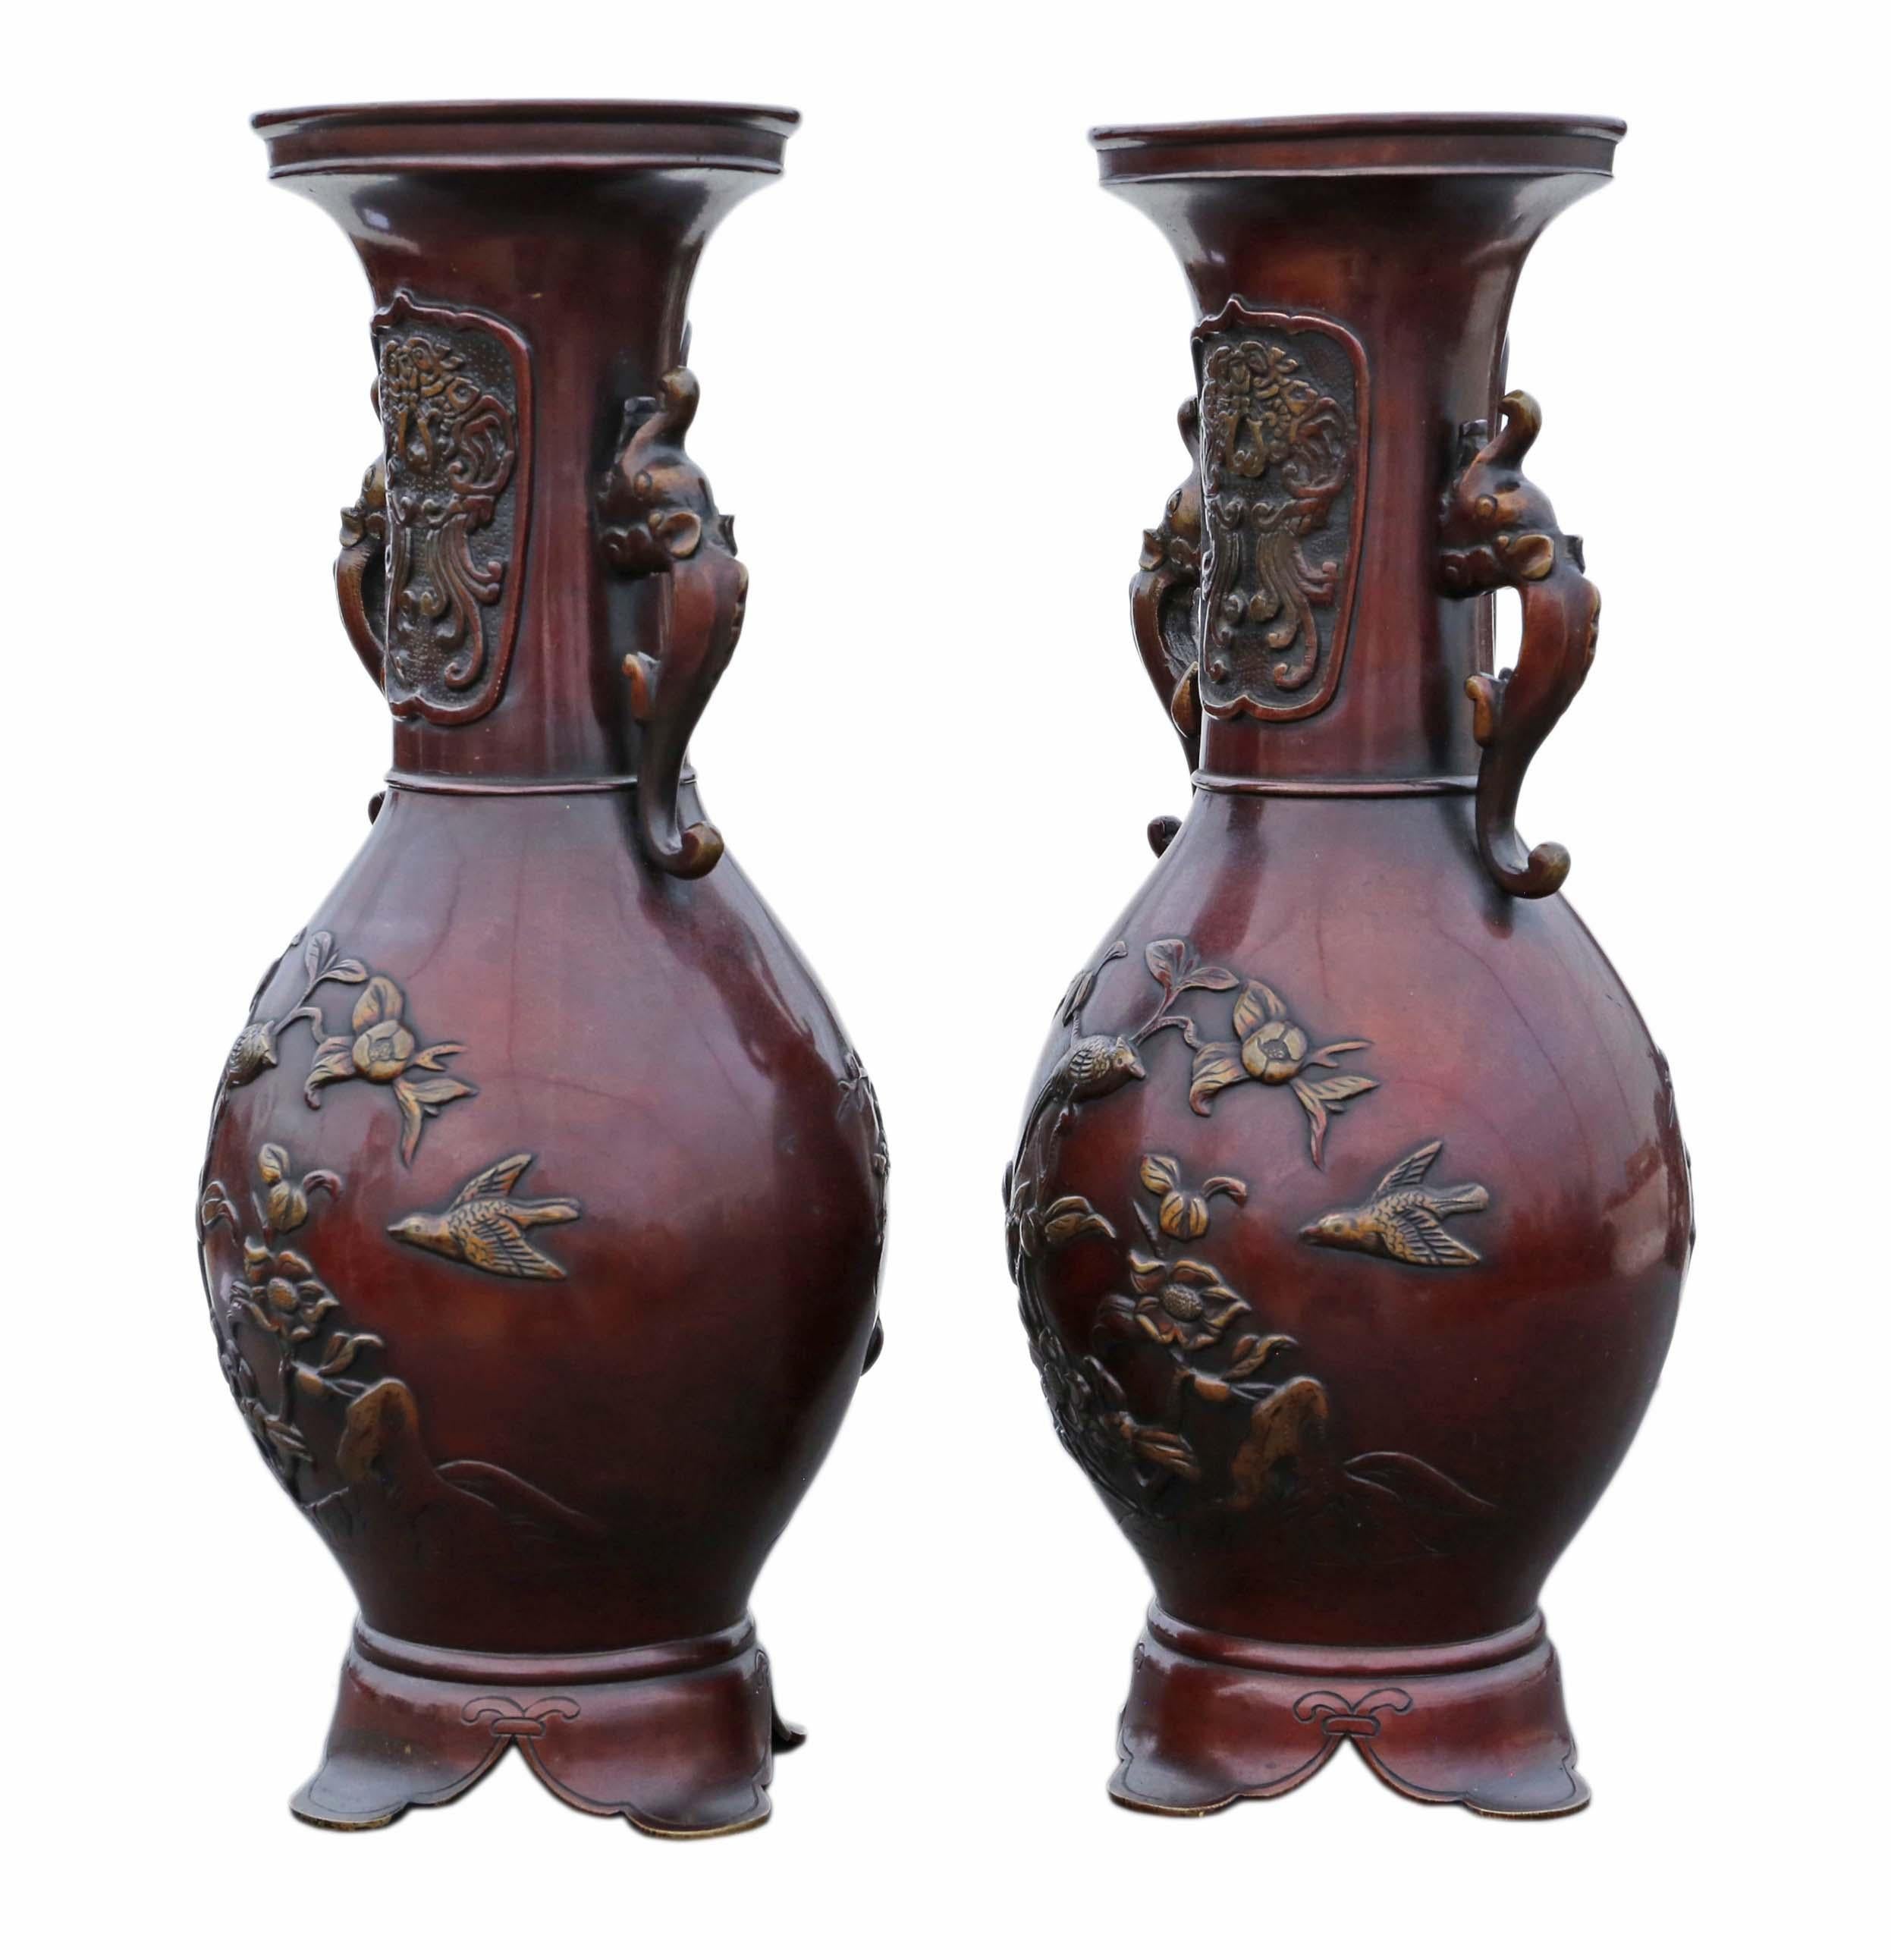 Très grande paire de vases anciens en bronze de qualité japonaise C1910 Période Meiji. 

Il serait magnifique au bon endroit. Rarement de grande taille et de grande conception.

Dimensions totales maximales : 35cmH x 14cm de diamètre. Peser 2,2